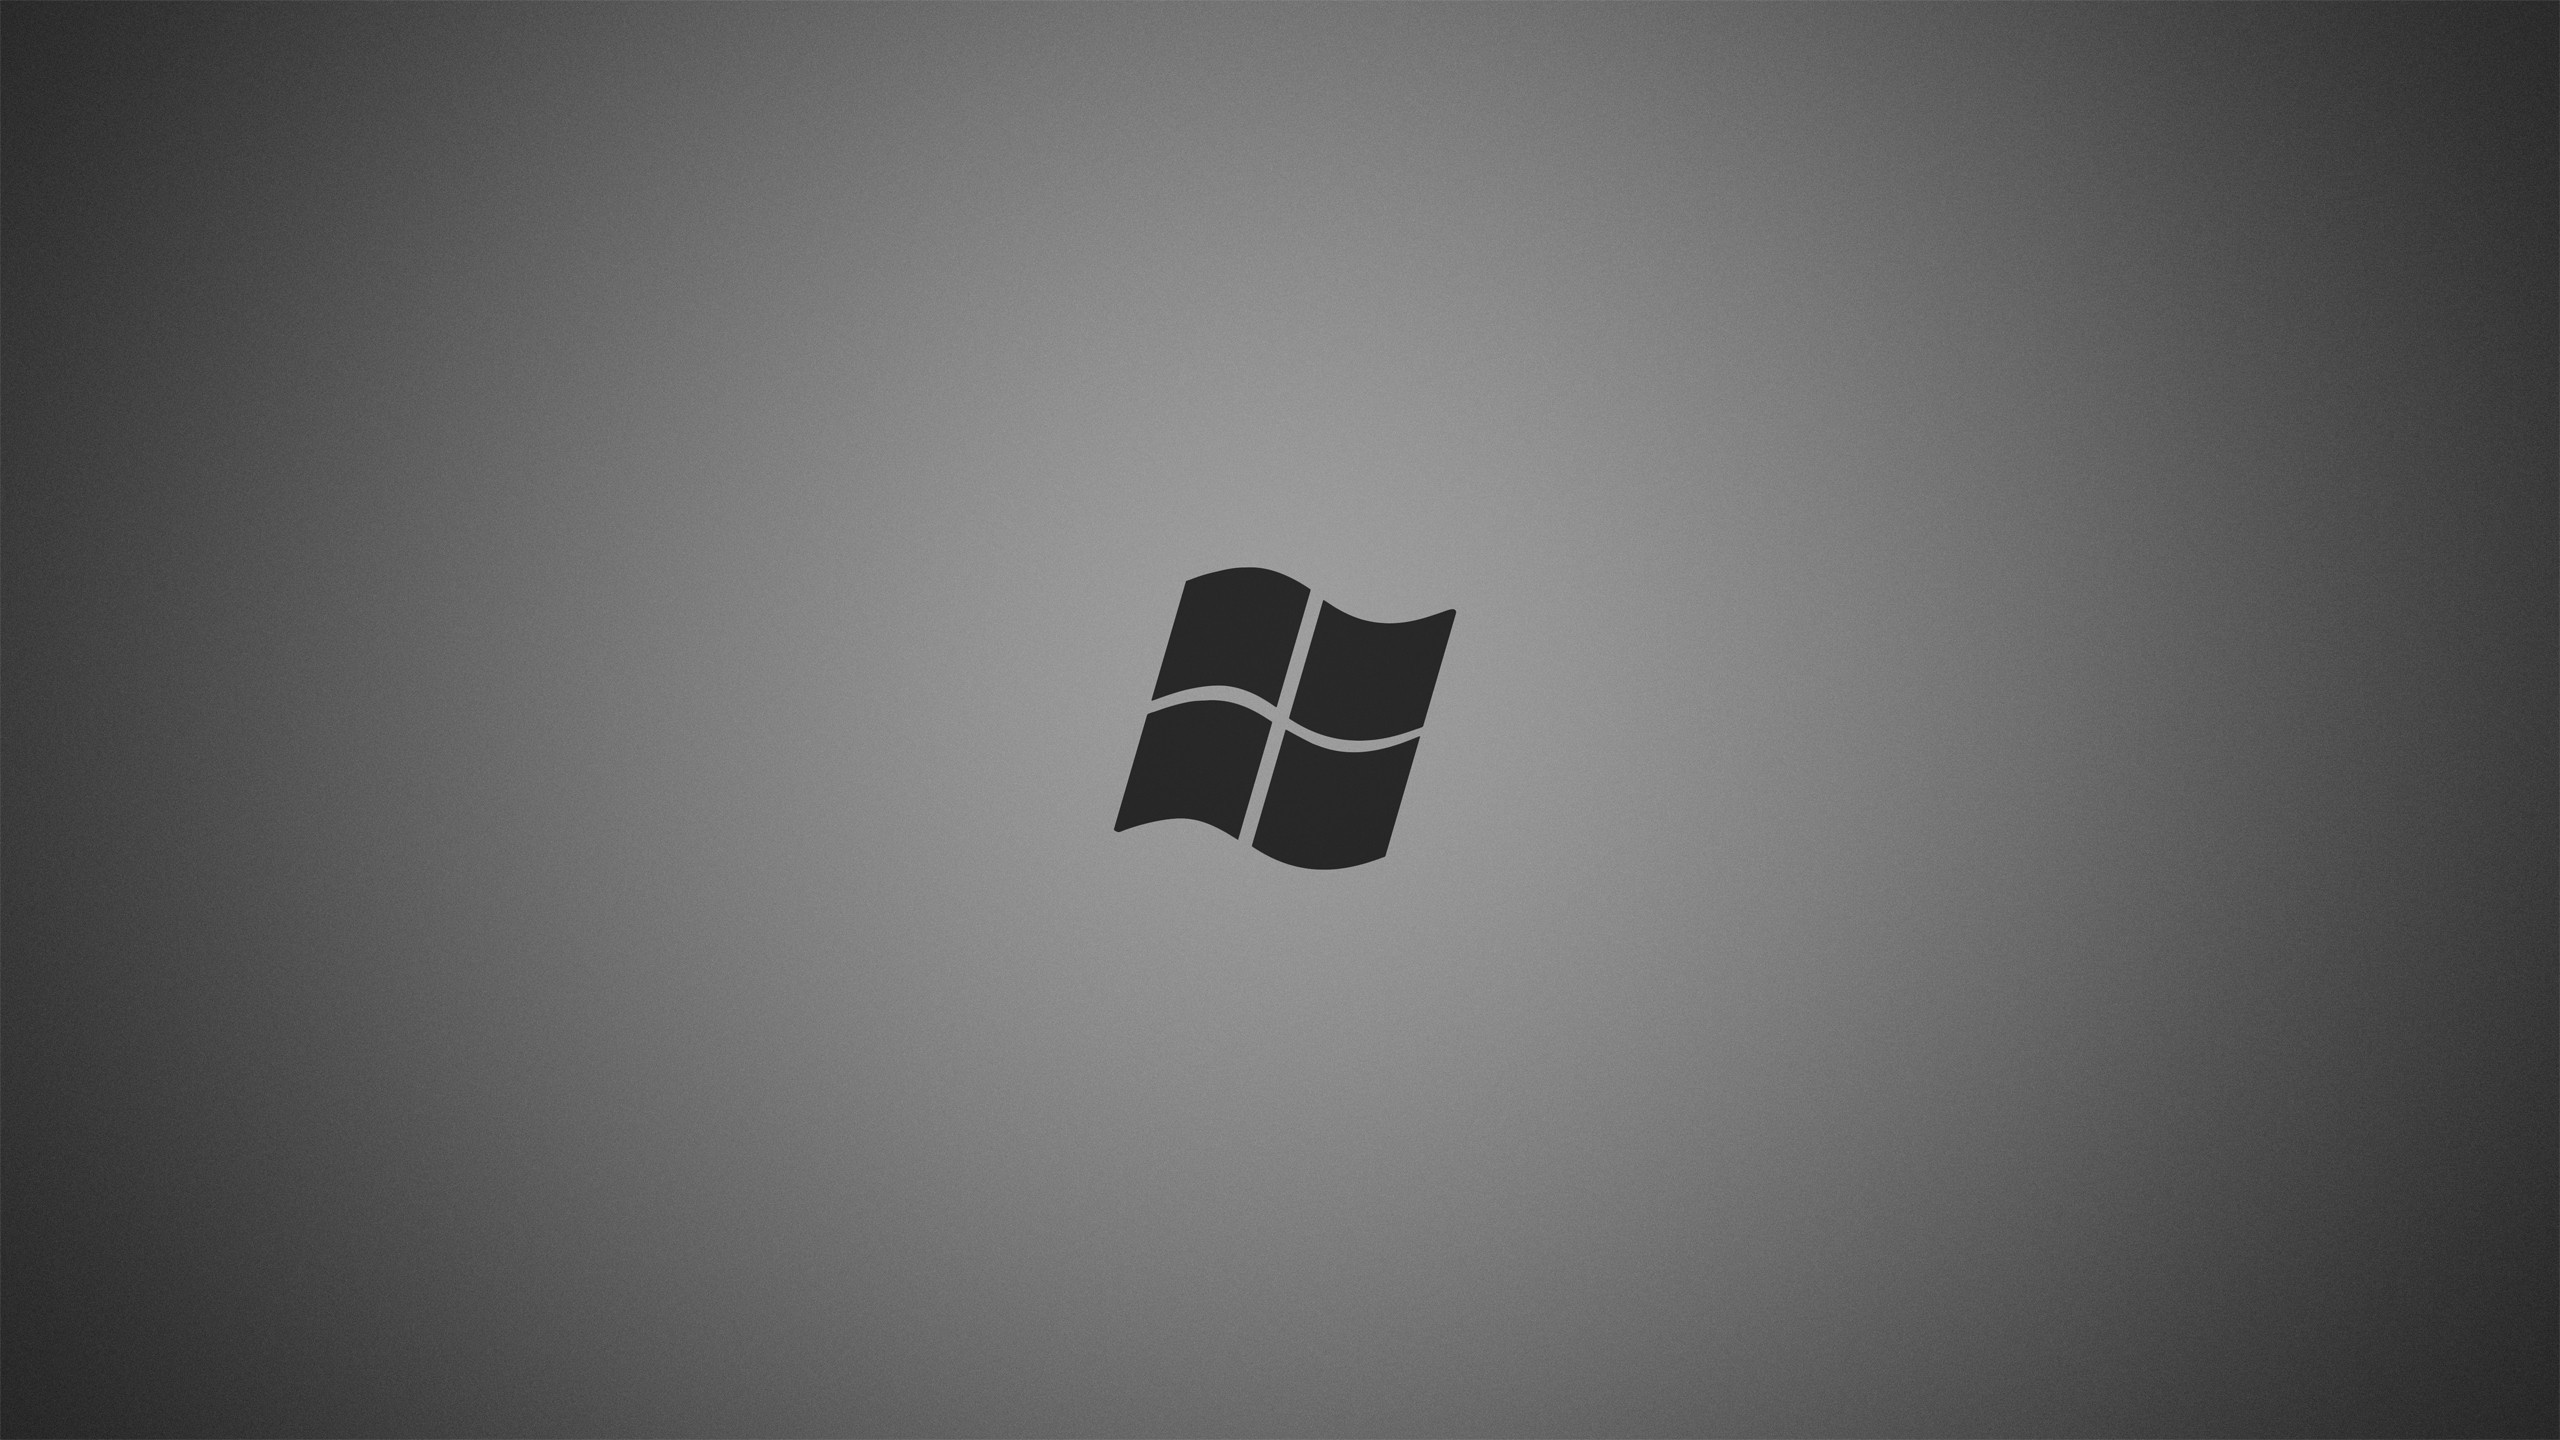 Logo Microsoft màu xám trên nền desktop xám 1920x1200 Nền desktop xám: Với hình nền desktop xám chủ đề Microsoft, bạn sẽ nhận được một trải nghiệm máy tính hoàn hảo và đúng theo phong cách. Logo Microsoft màu xám trên nền desktop xám sẽ đem lại cho bạn sự thu hút, sự chuyên nghiệp và sự thẩm mỹ cao, tăng thêm sự phù hợp trong làm việc với công nghệ Microsoft.